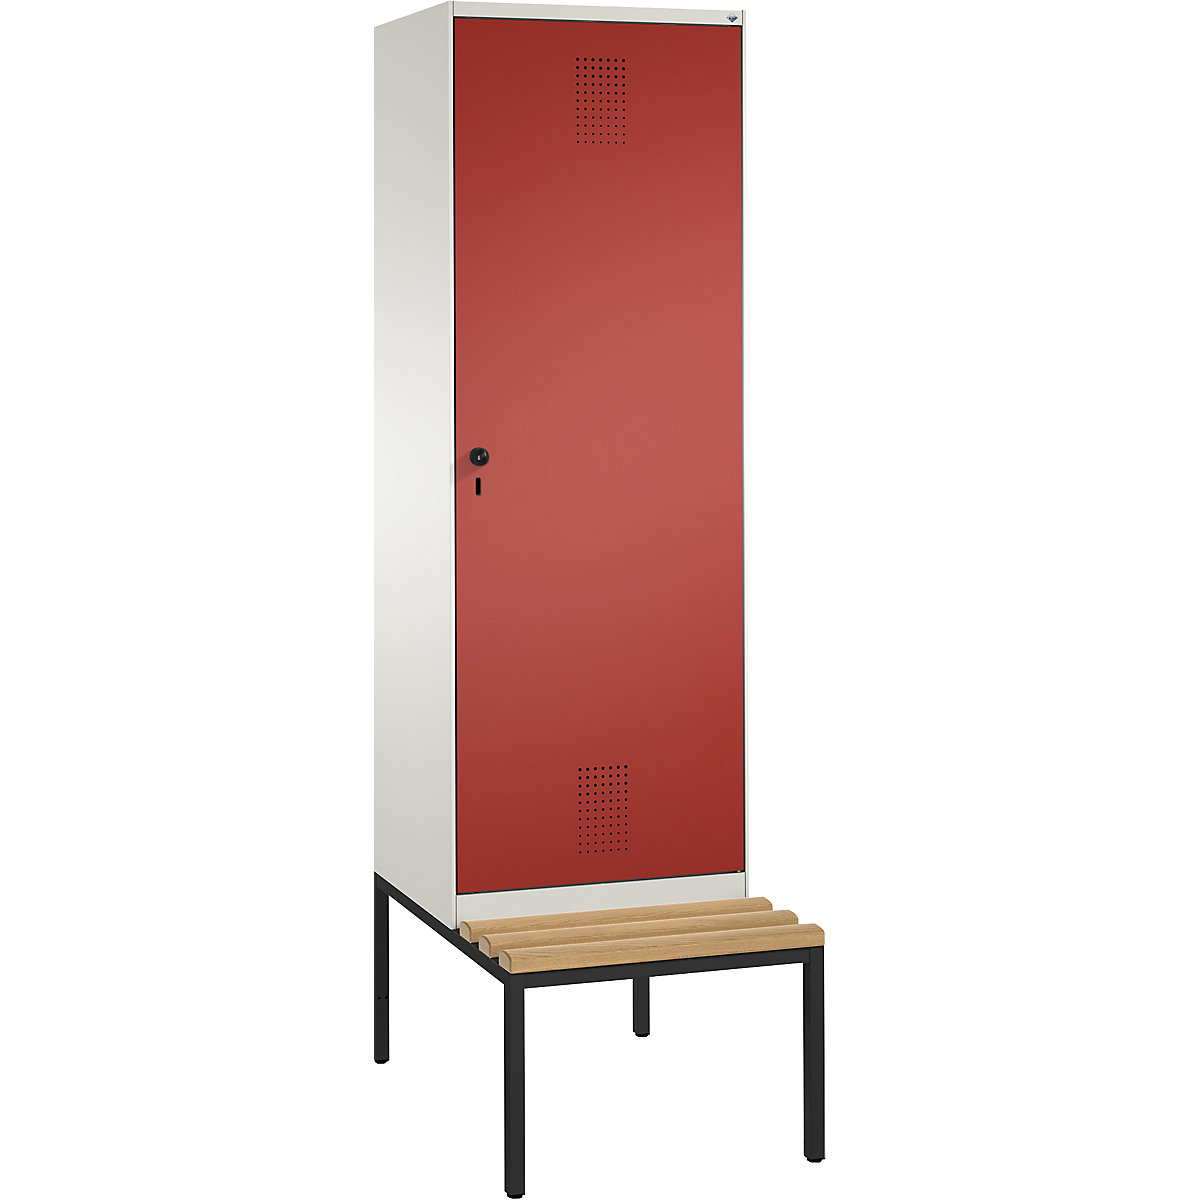 Šatní skříň s lavicí EVOLO s dveřmi přes 2 oddíly – C+P, 2 oddíly, 1 dveře, šířka oddílu 300 mm, čistá bílá / ohnivě červená-8